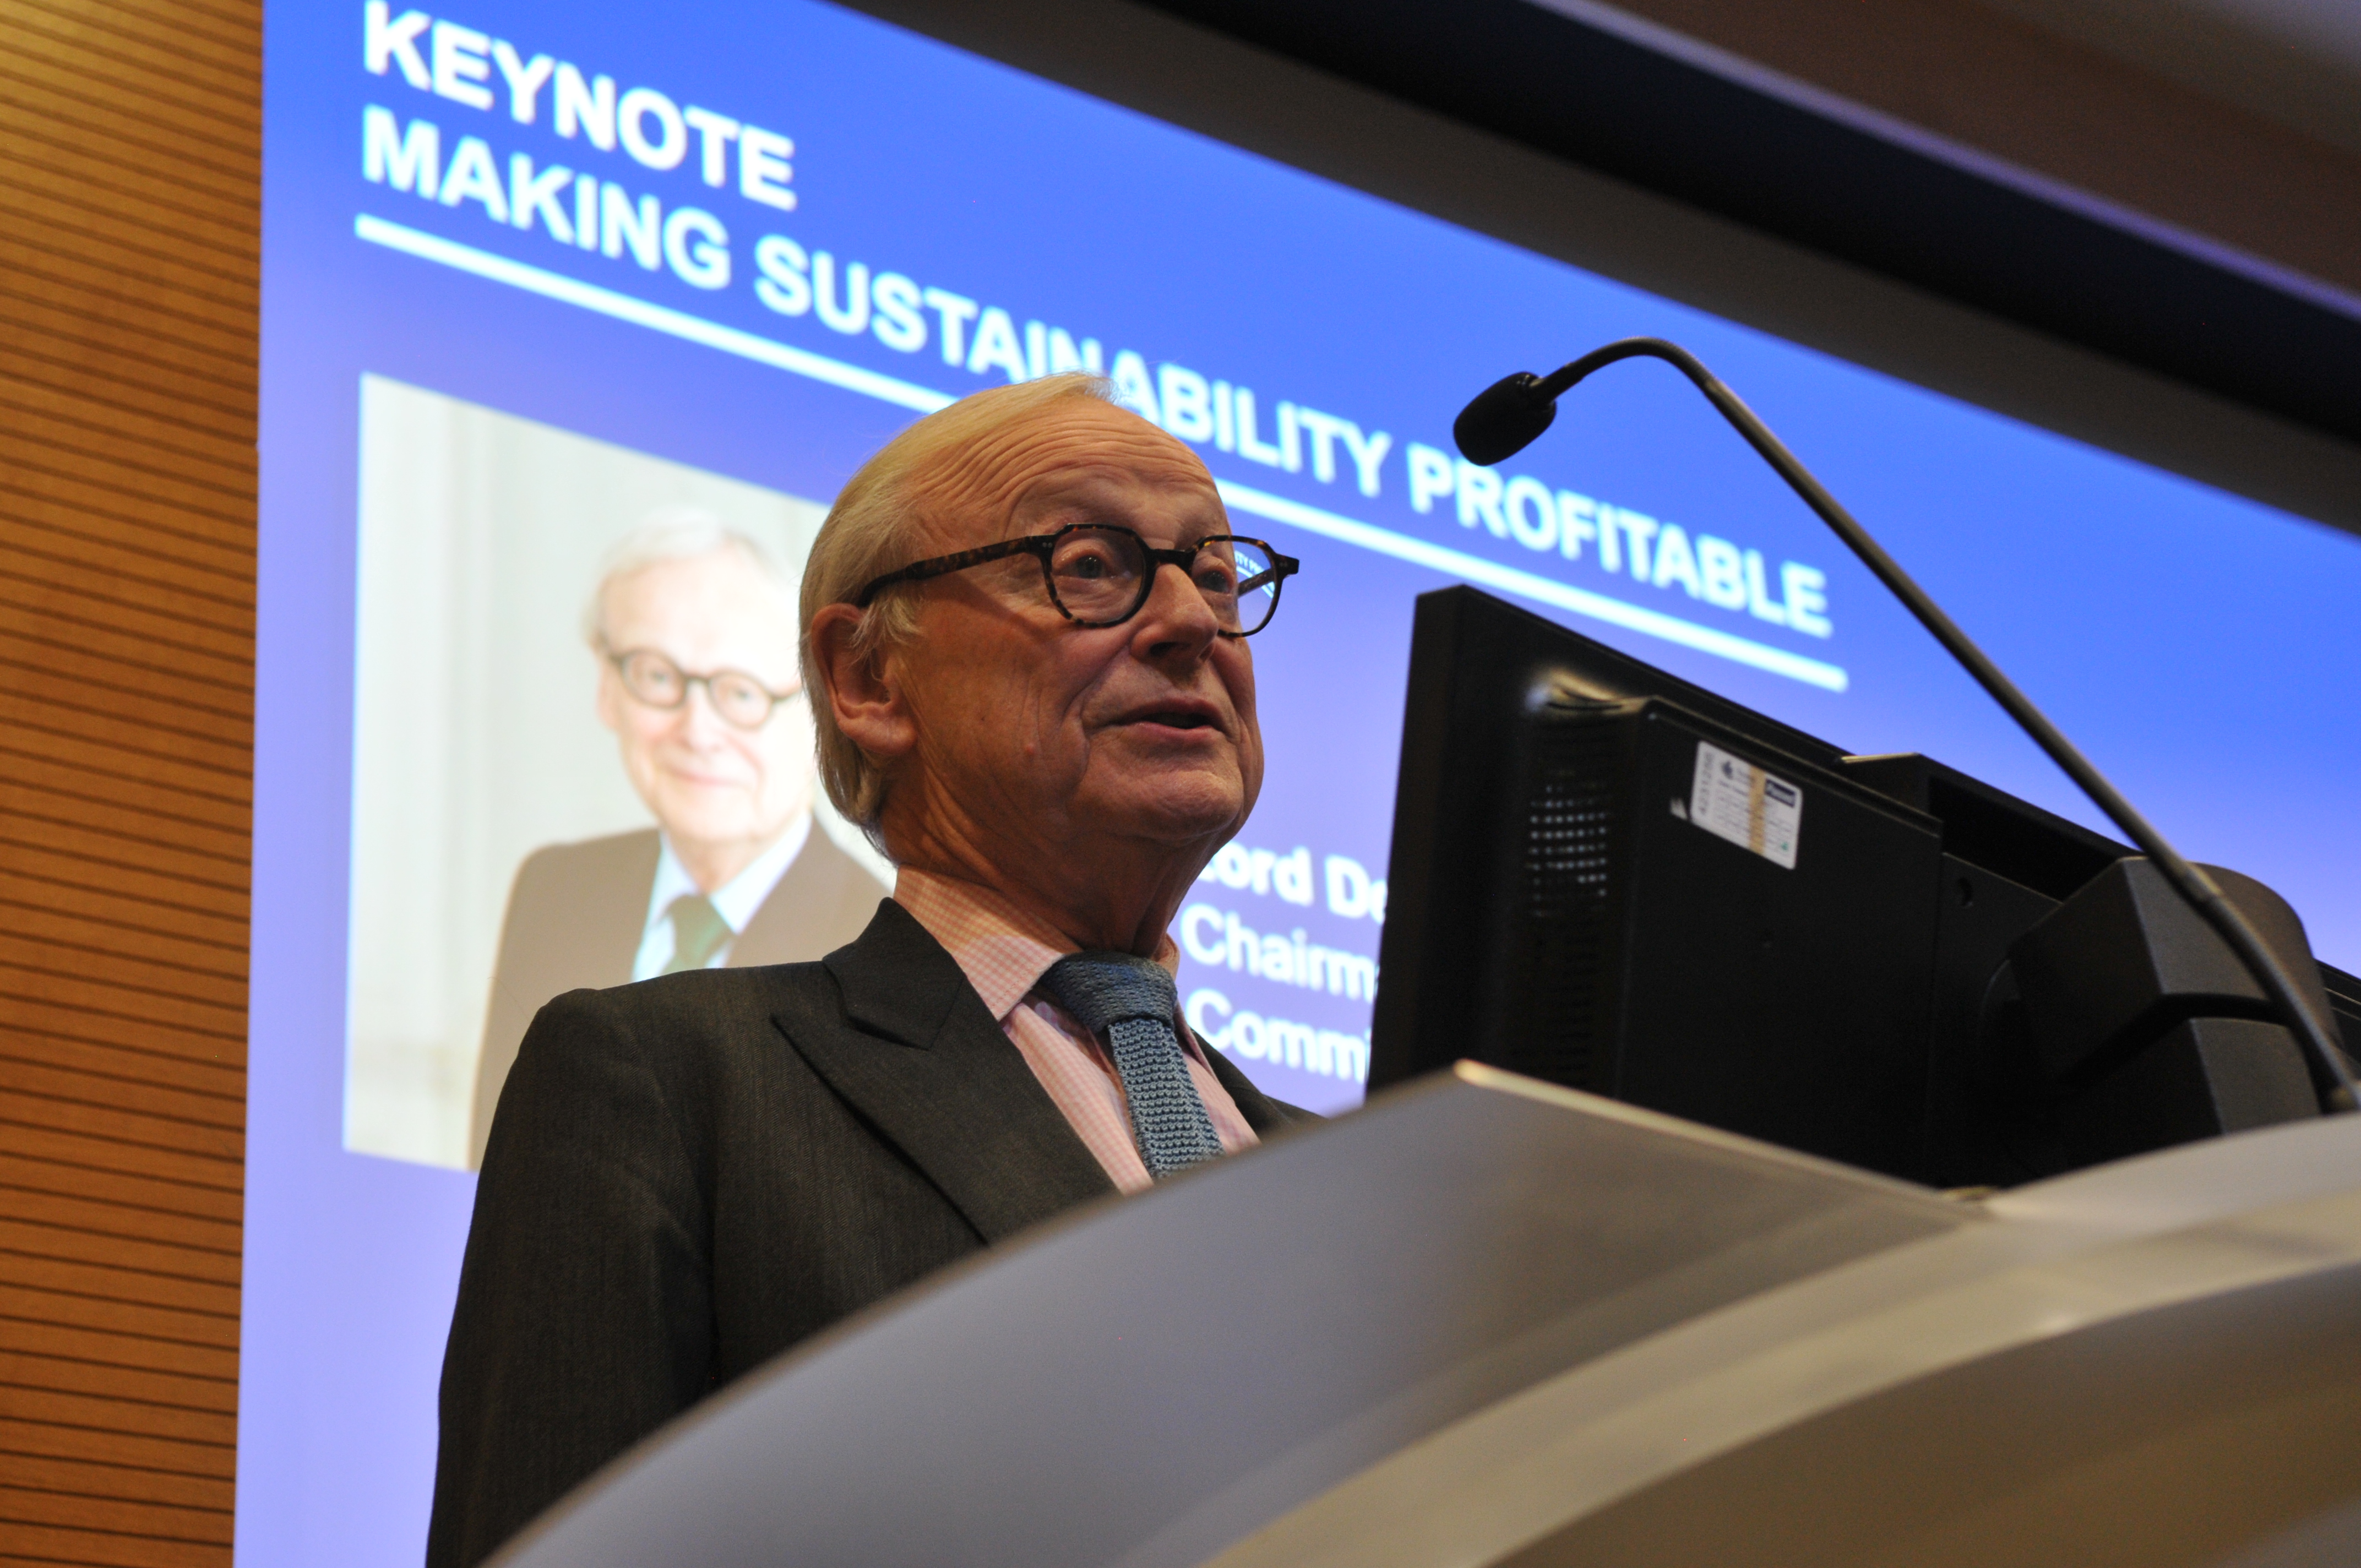 Opening keynote  |  Making Sustainability Profitable